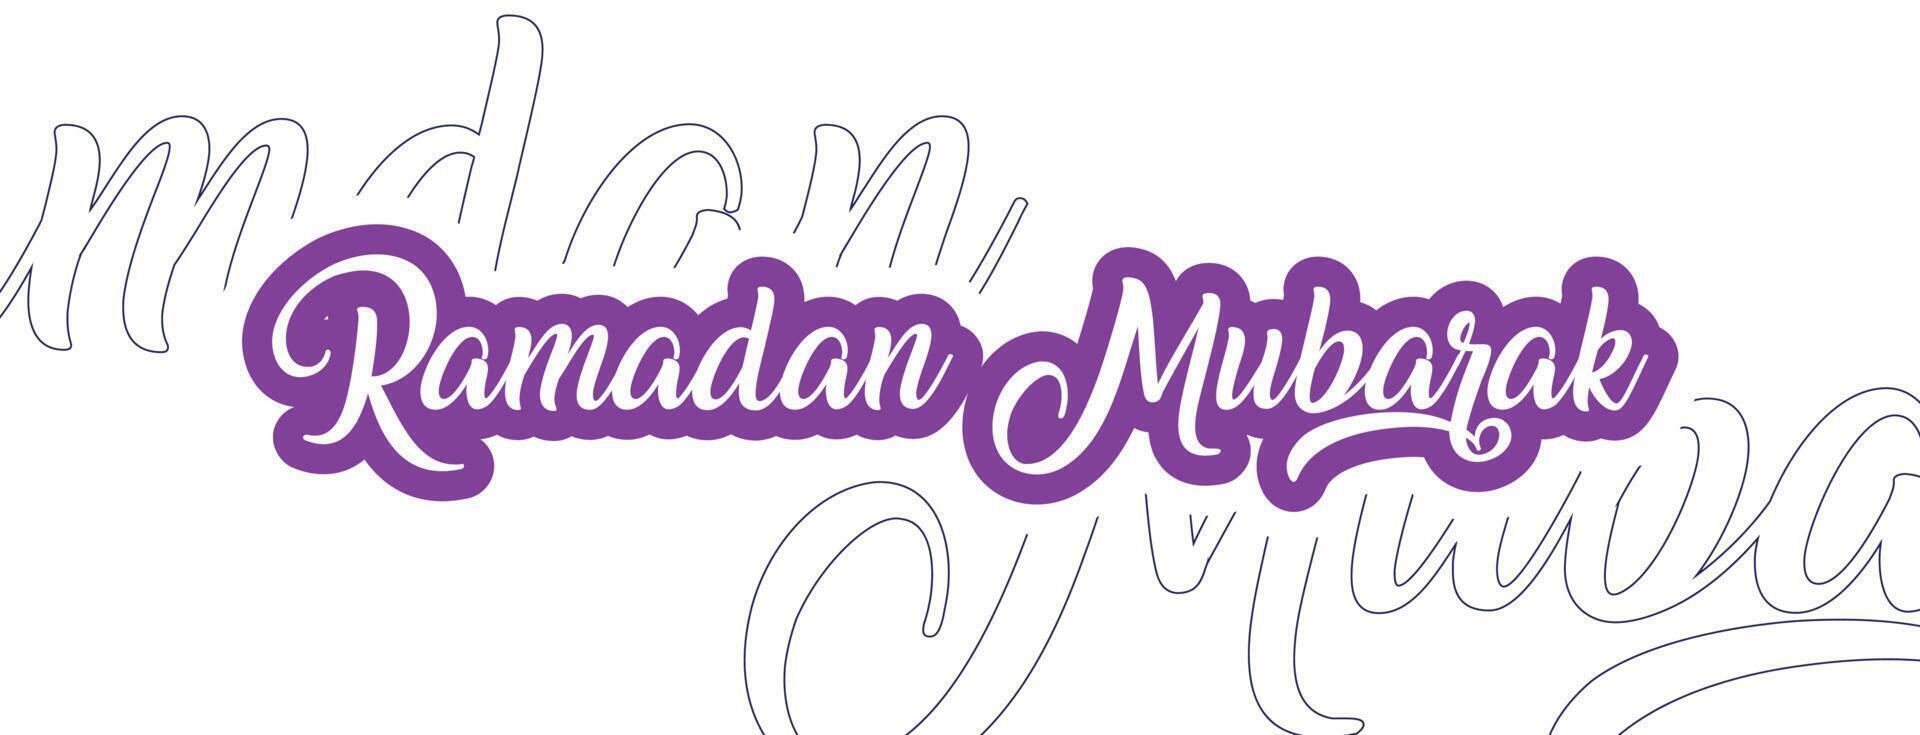 Ramadan mubarak in schoonschrift stijl vector